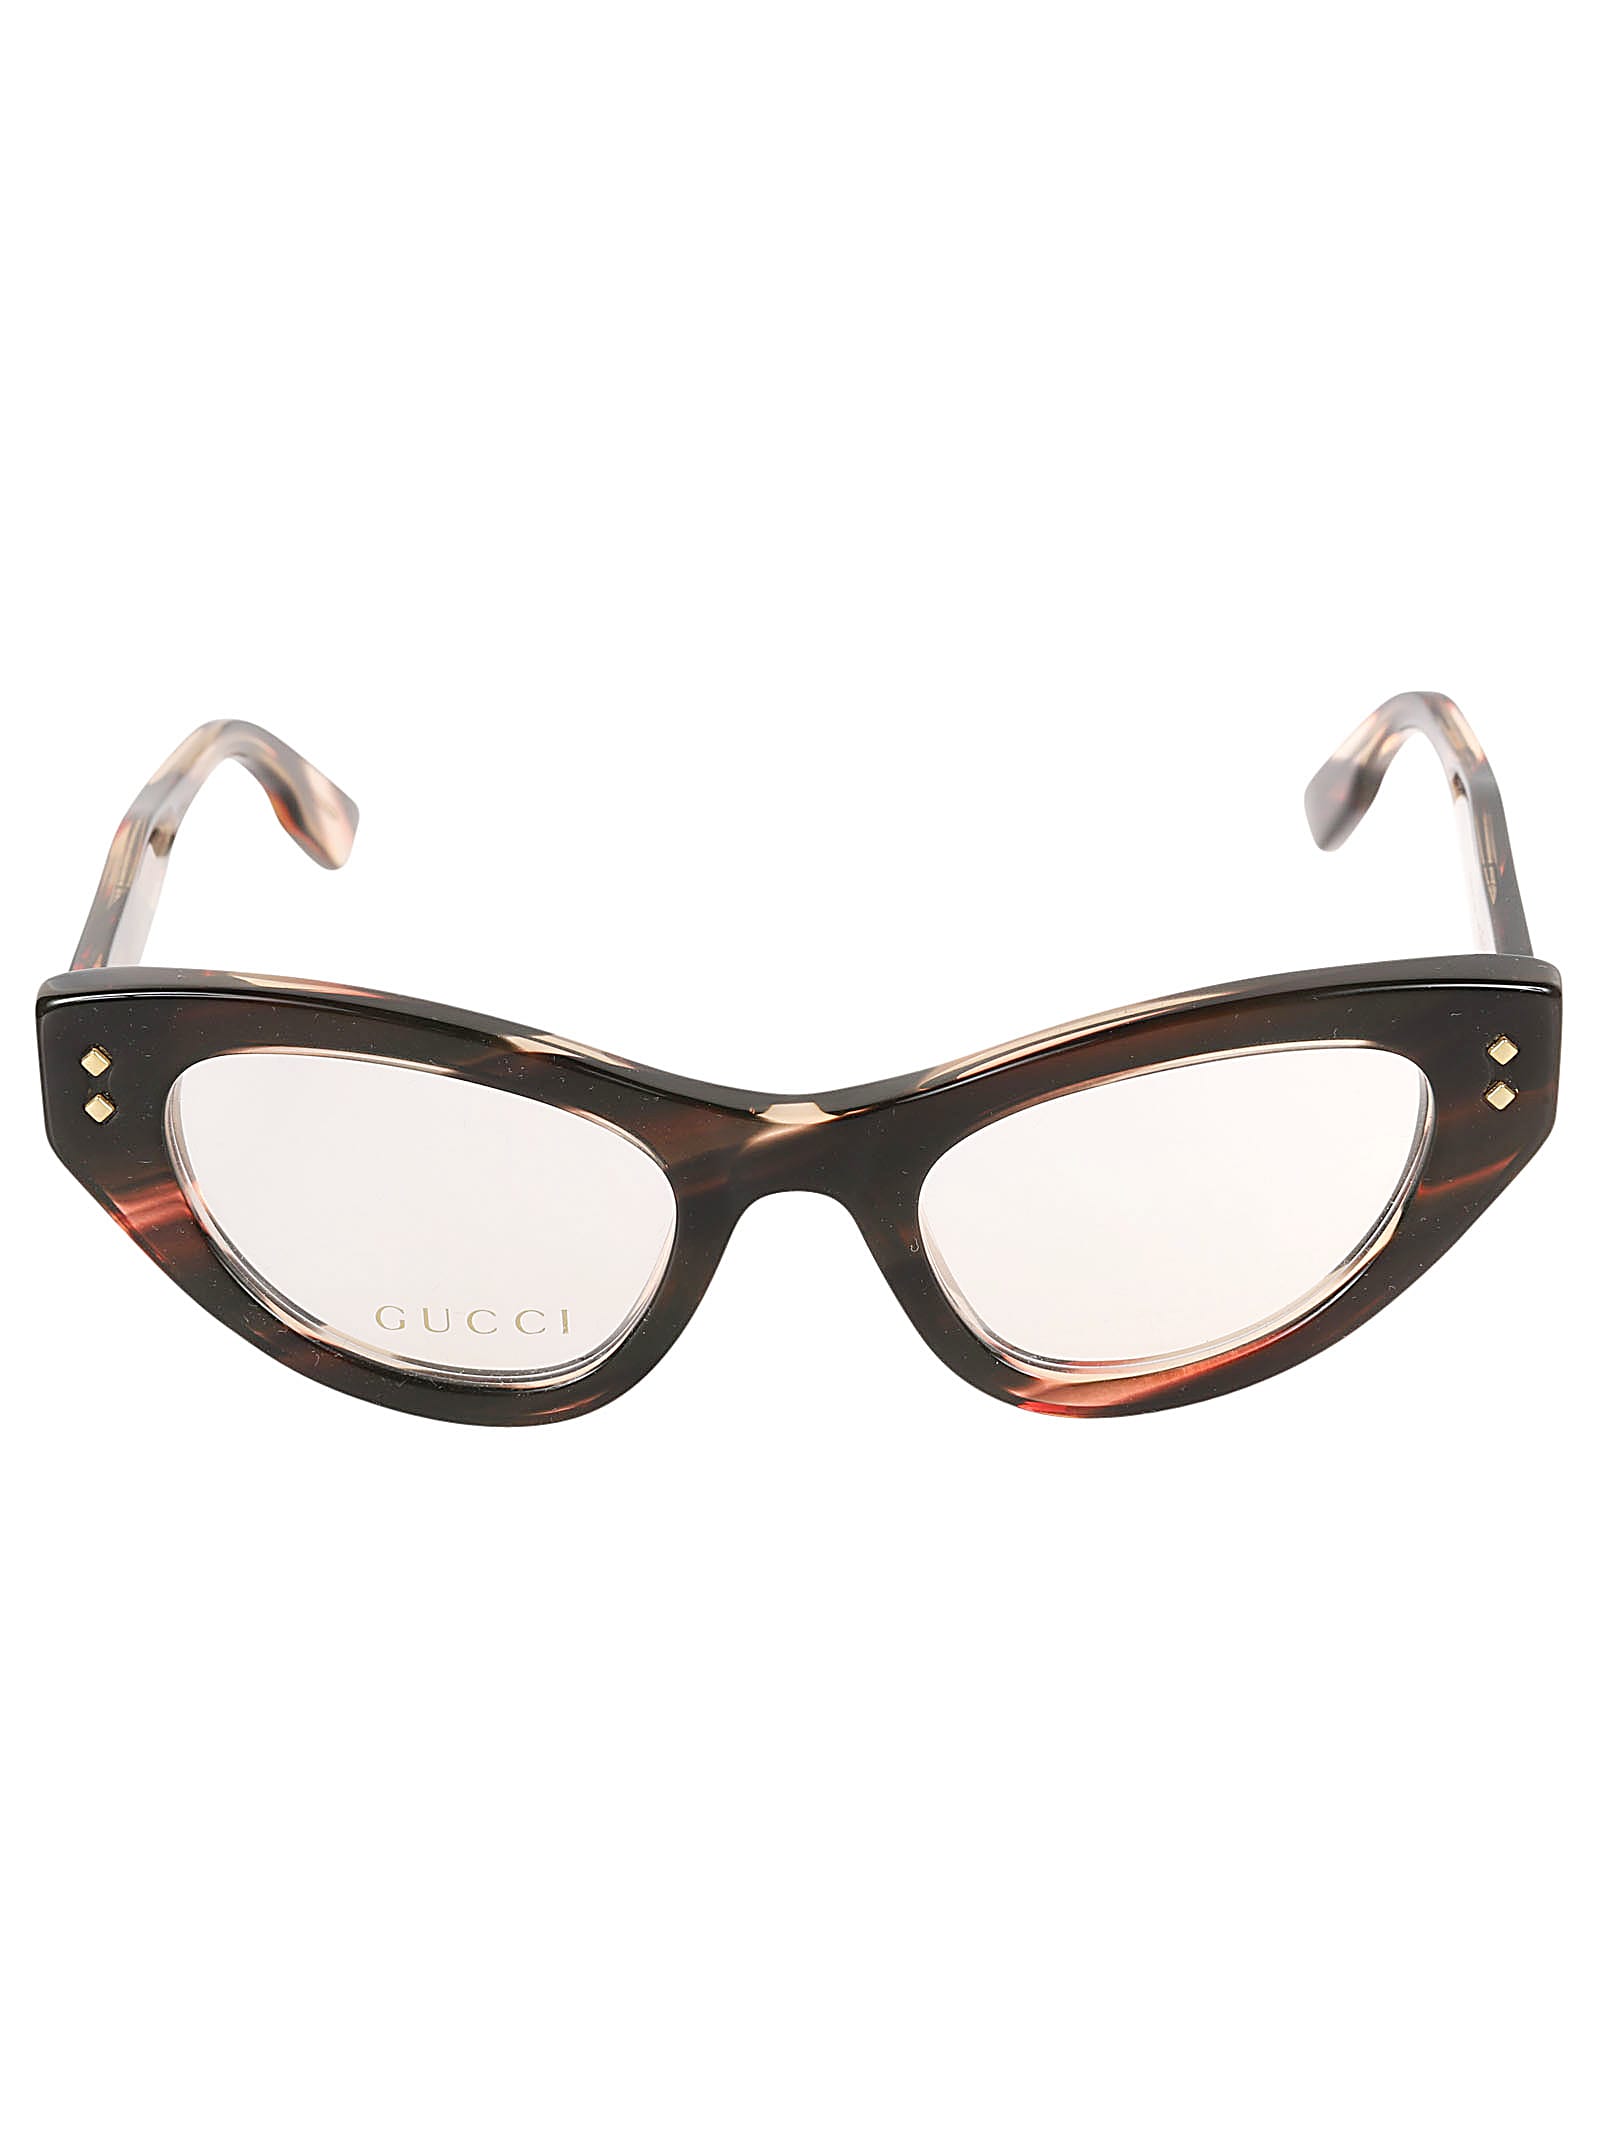 Cat-eye Logo Sided Glasses